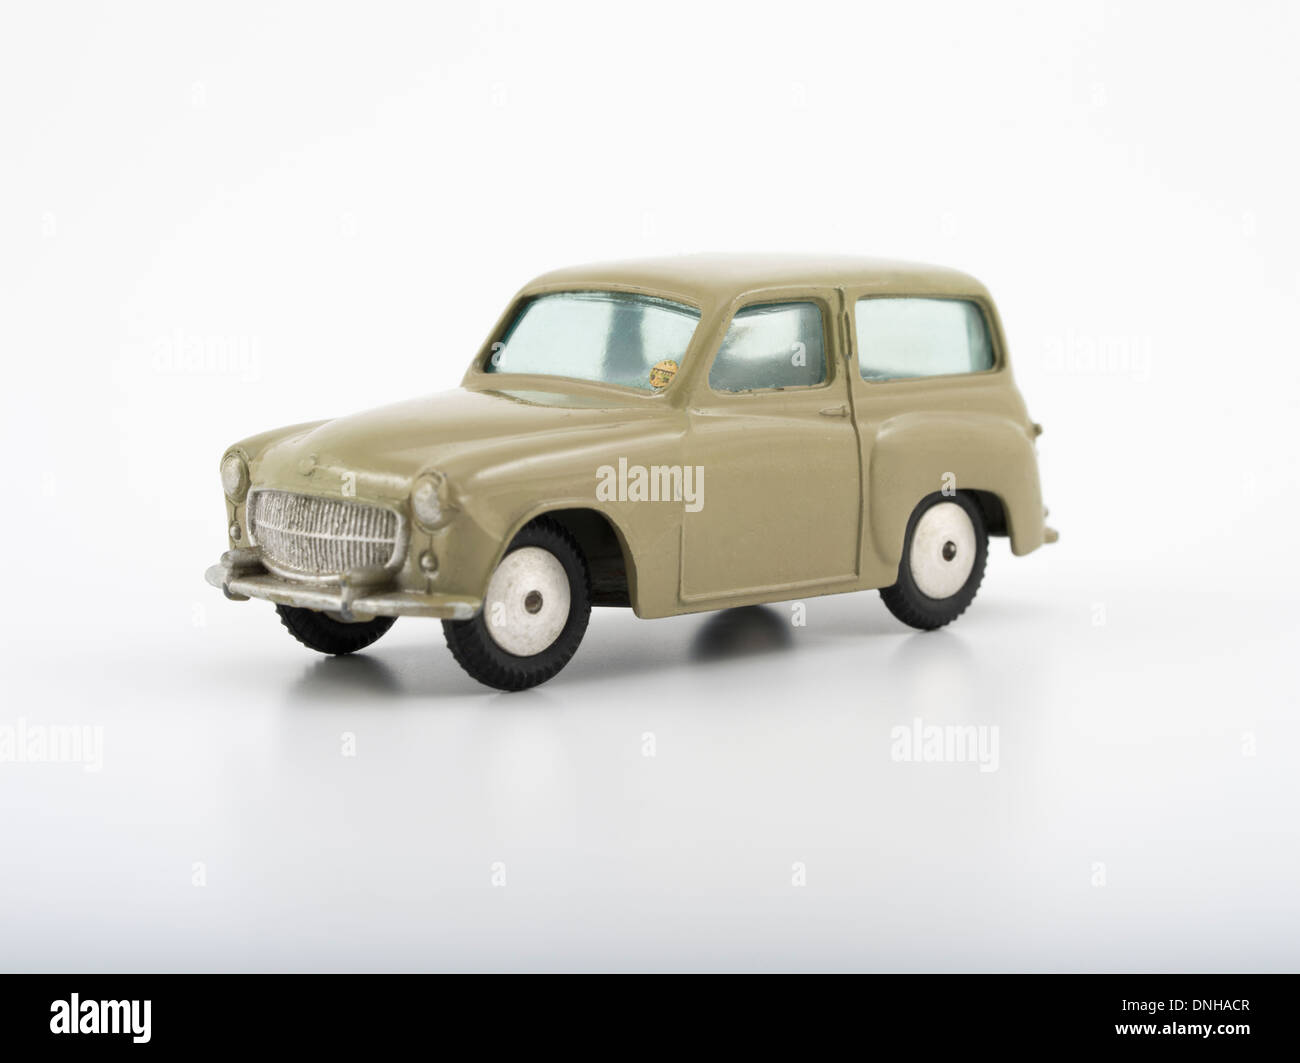 Corgi giocattoli pressofuso auto # 206 Hillman Husky 1956 prodotta da Mettoy Playcraft Ltd nel Regno Unito. Foto Stock